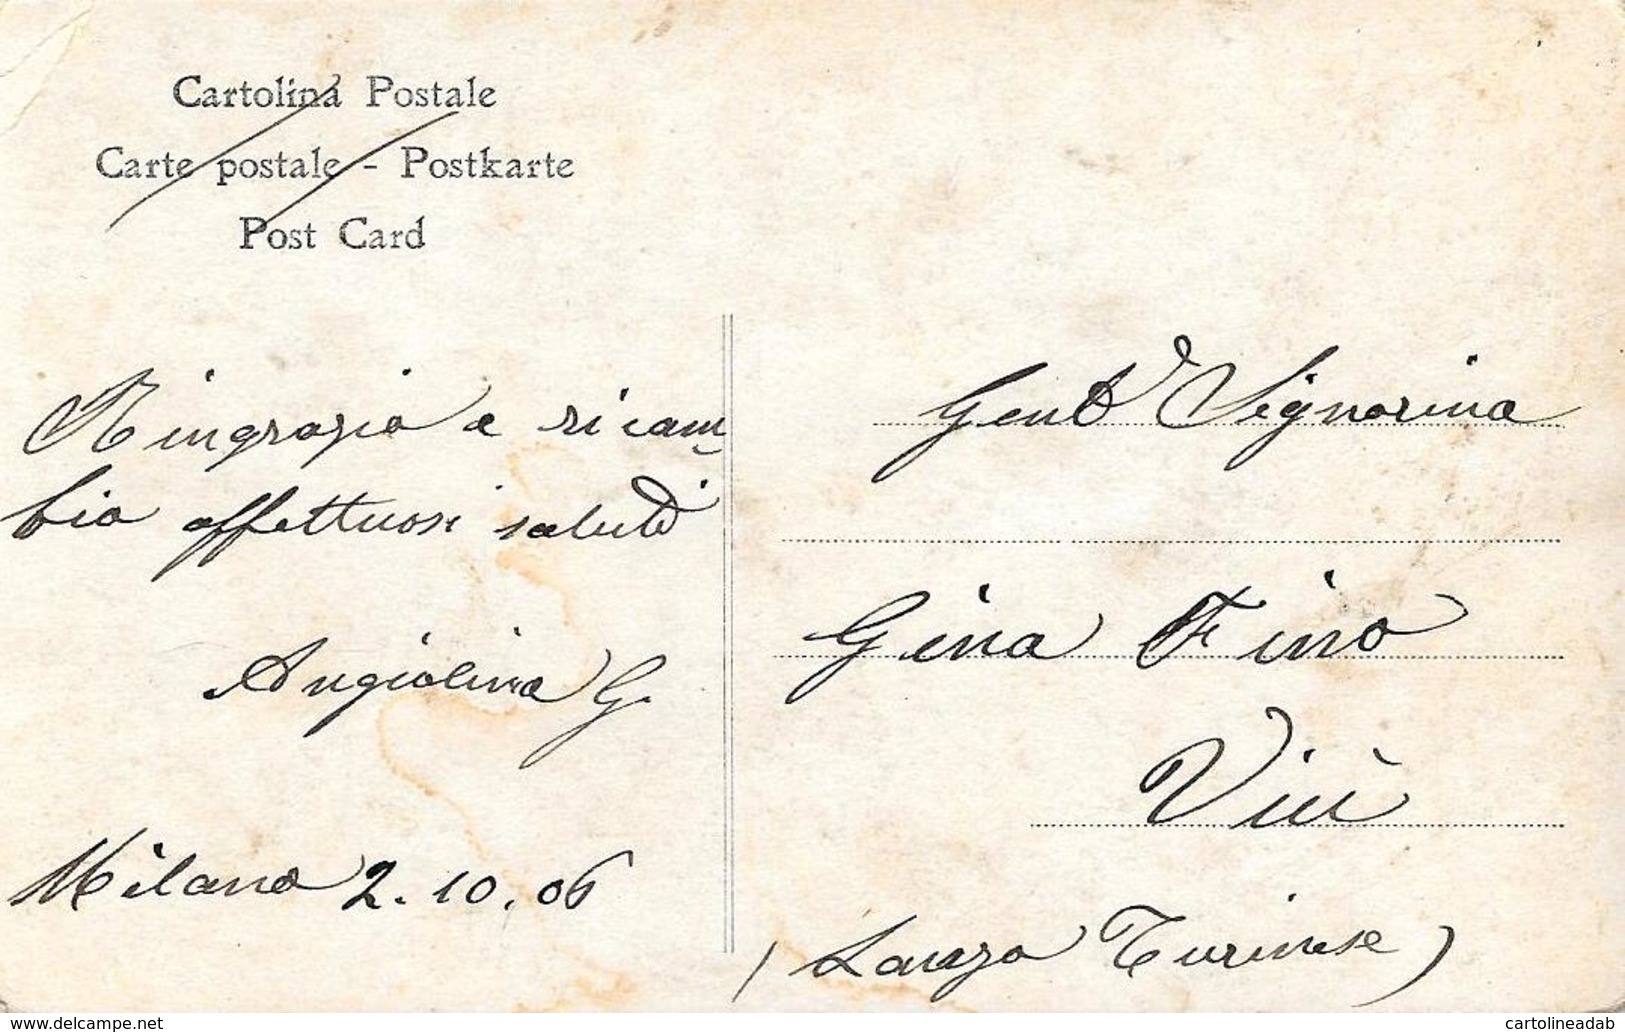 [DC7786] CPA - FAMIGLIA REALE A RACCONIGI - CARTOLINA FOTOGRAFICA - Non Viaggiata 1906 - Old Postcard - Case Reali